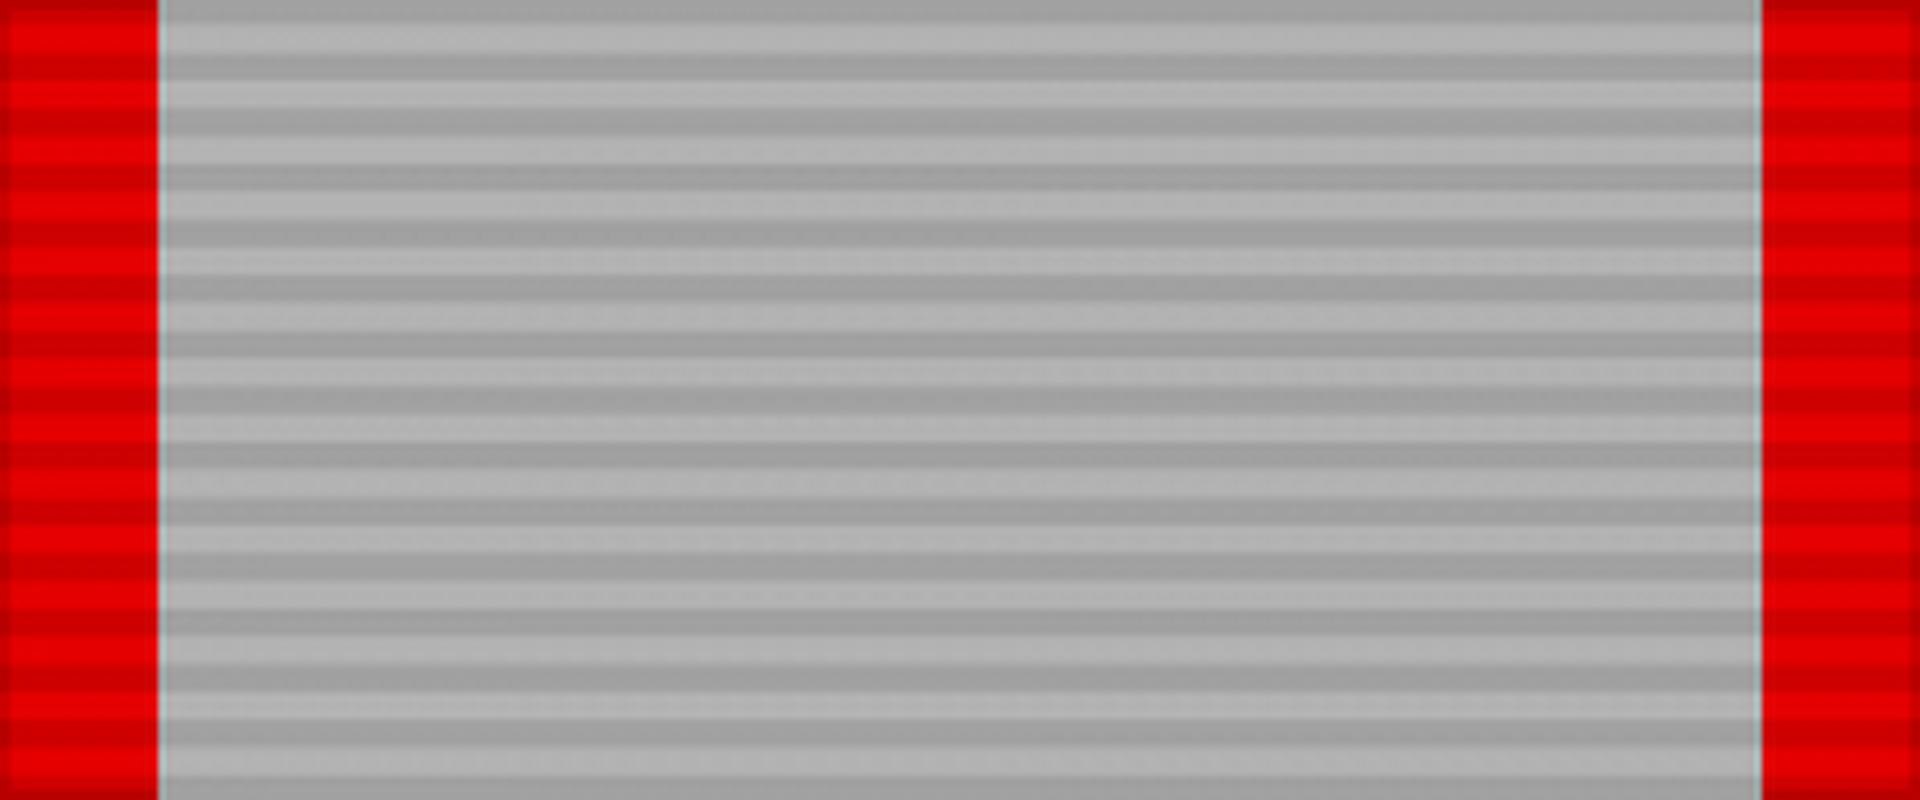 Лента медали «XX лет Рабоче-Крестьянской Красной Армии». СССР.